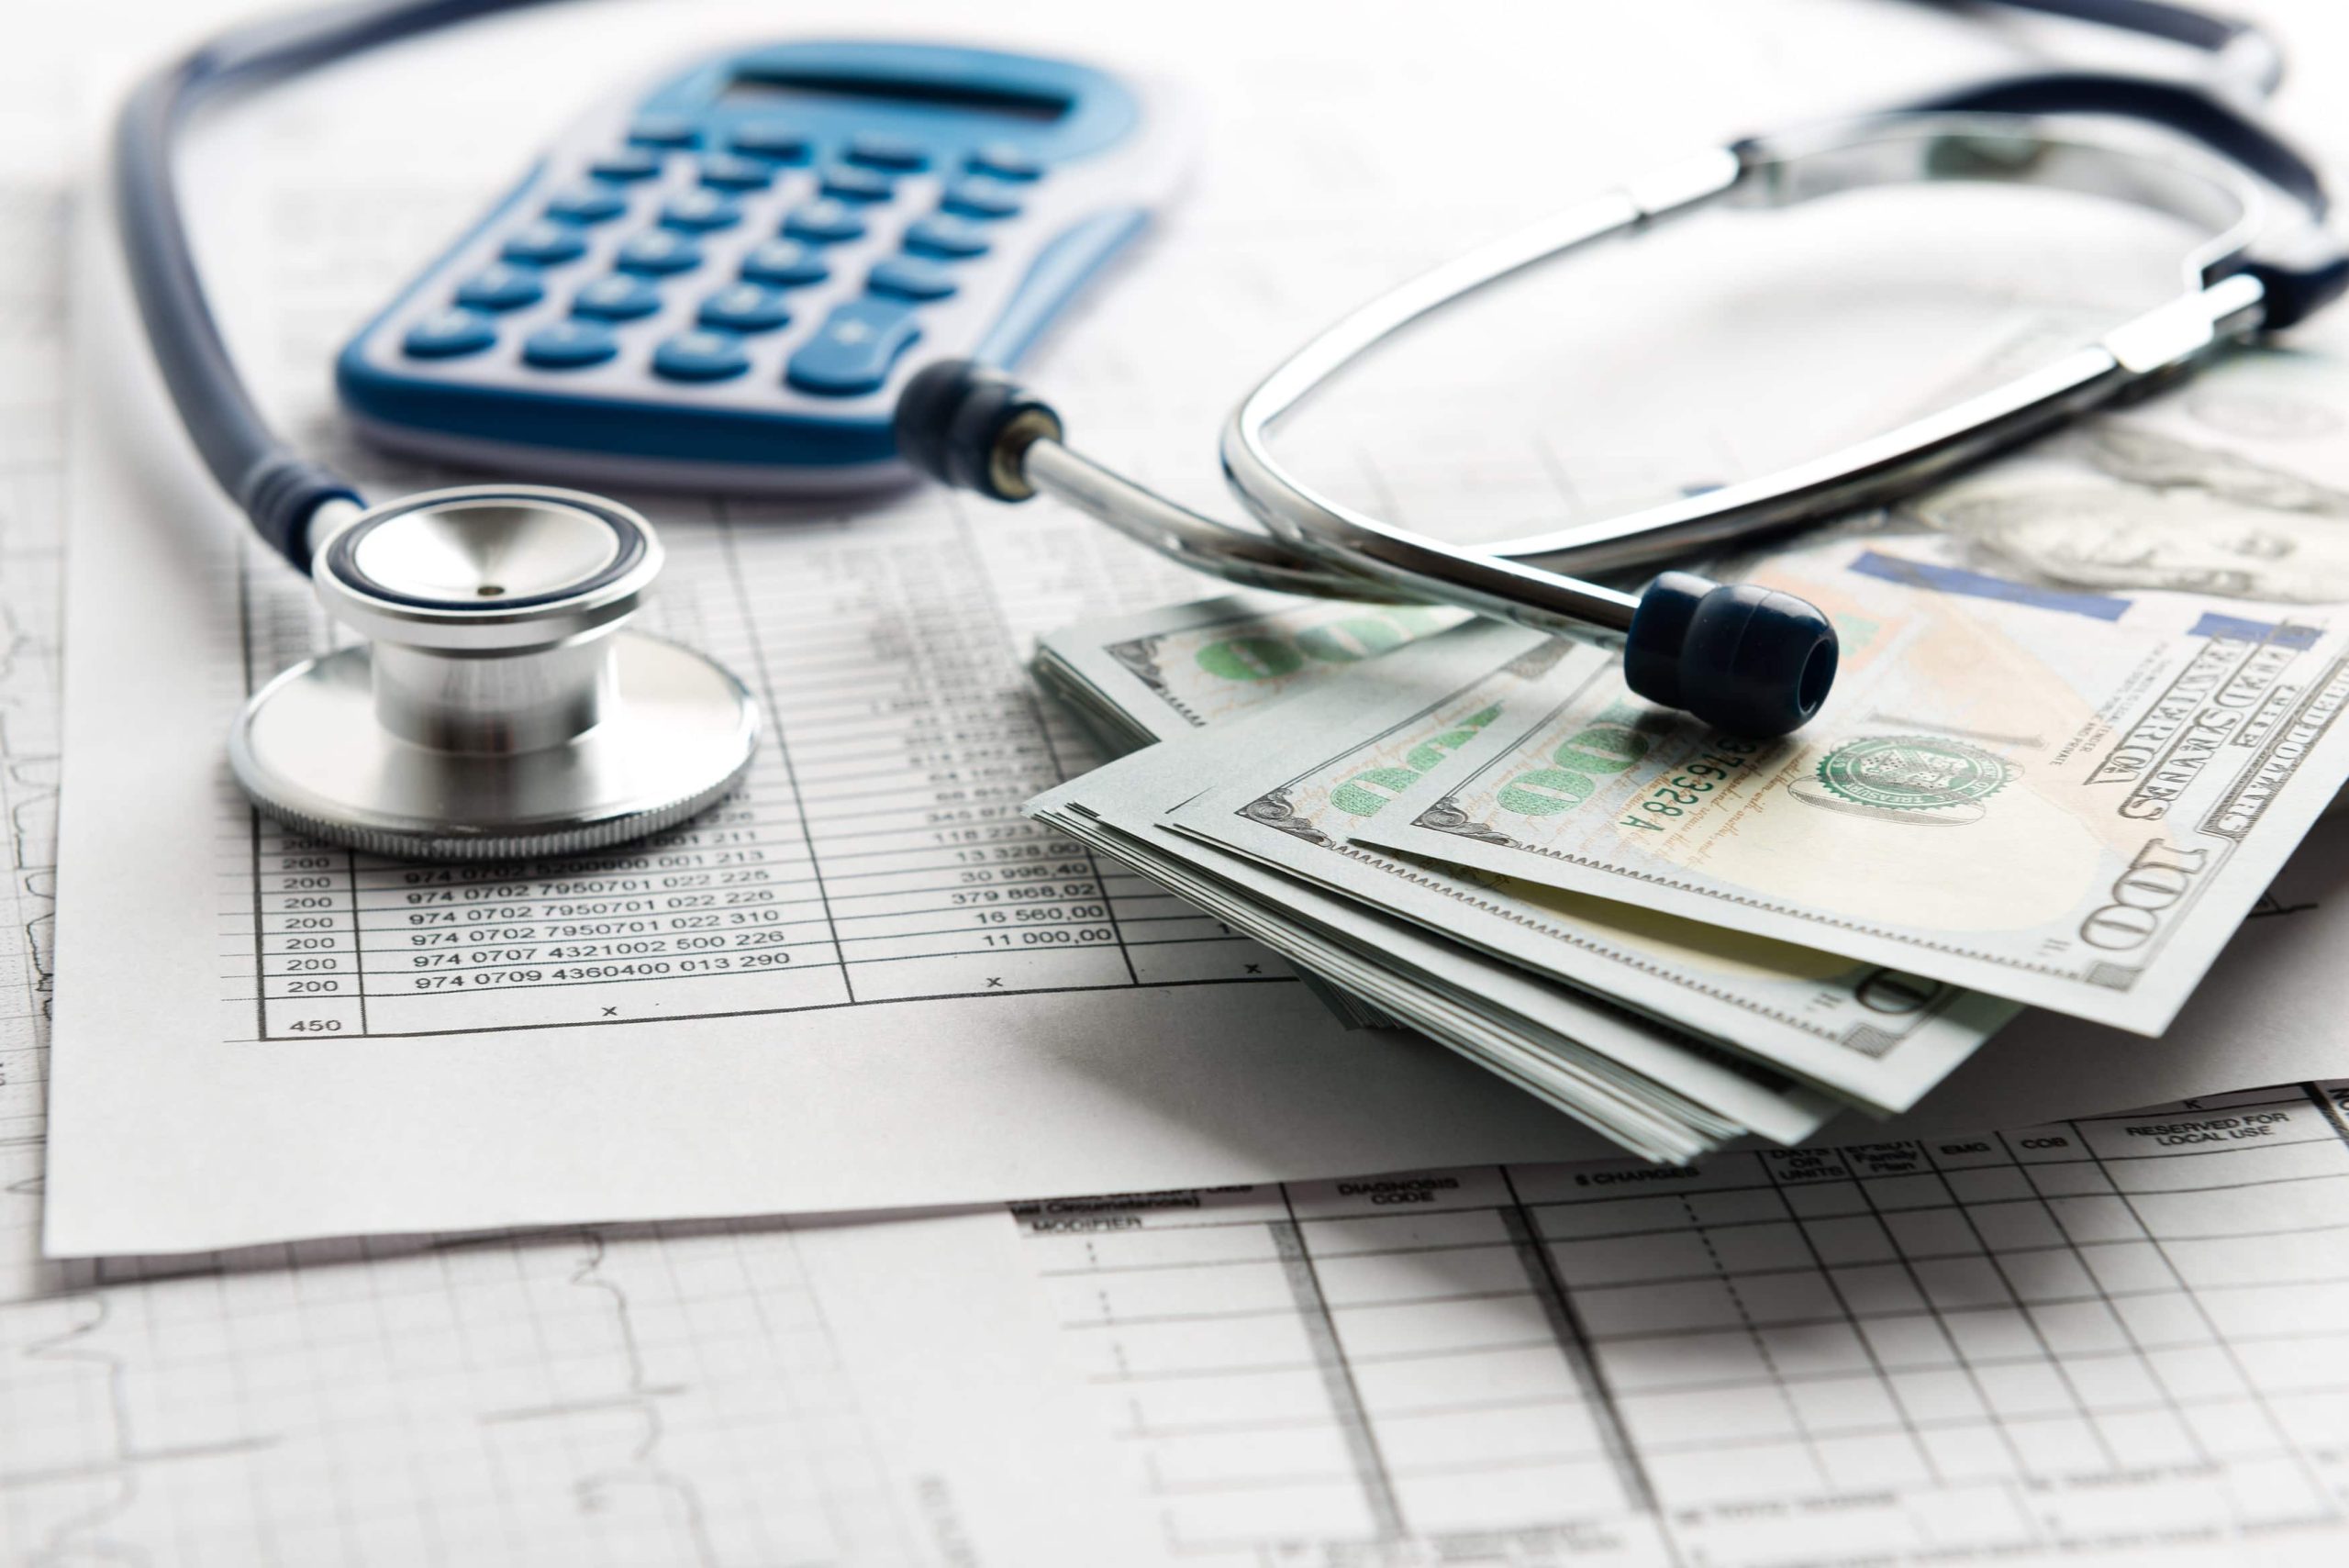 Analyse de l’affectation du budget des soins de santé : Utilisation efficace et lacunes